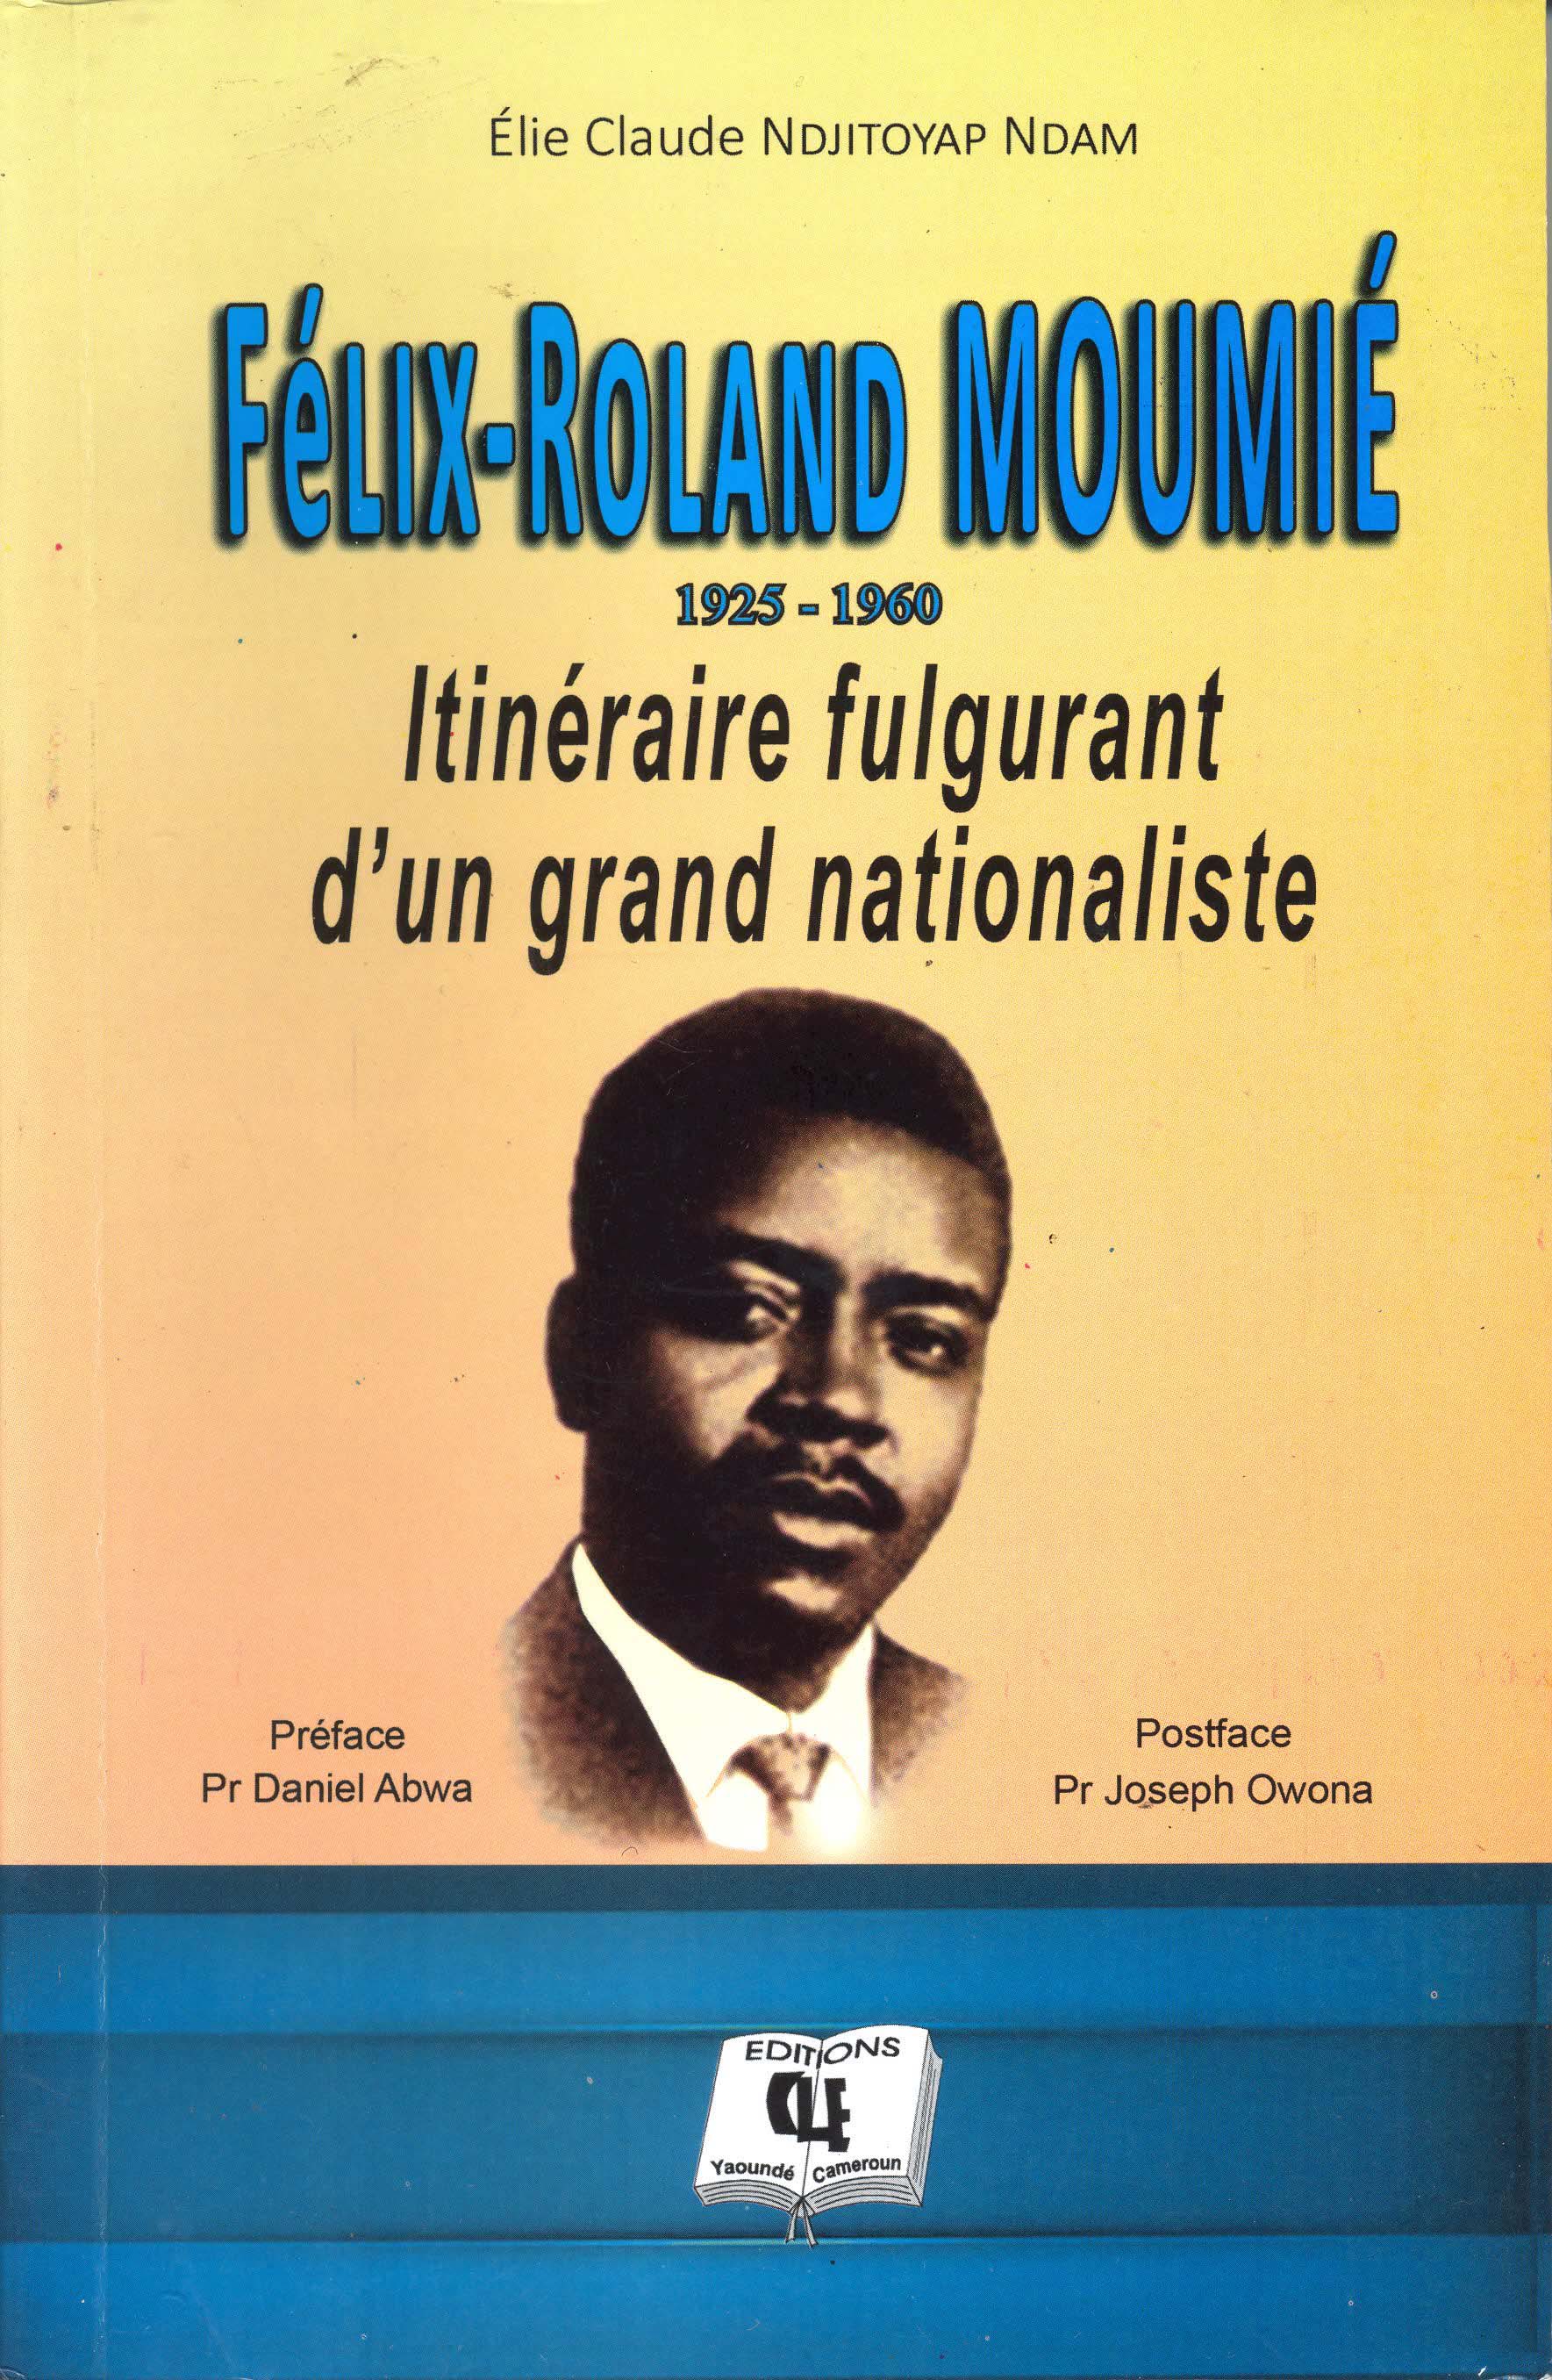 Félix-Roland MOUMIÉ